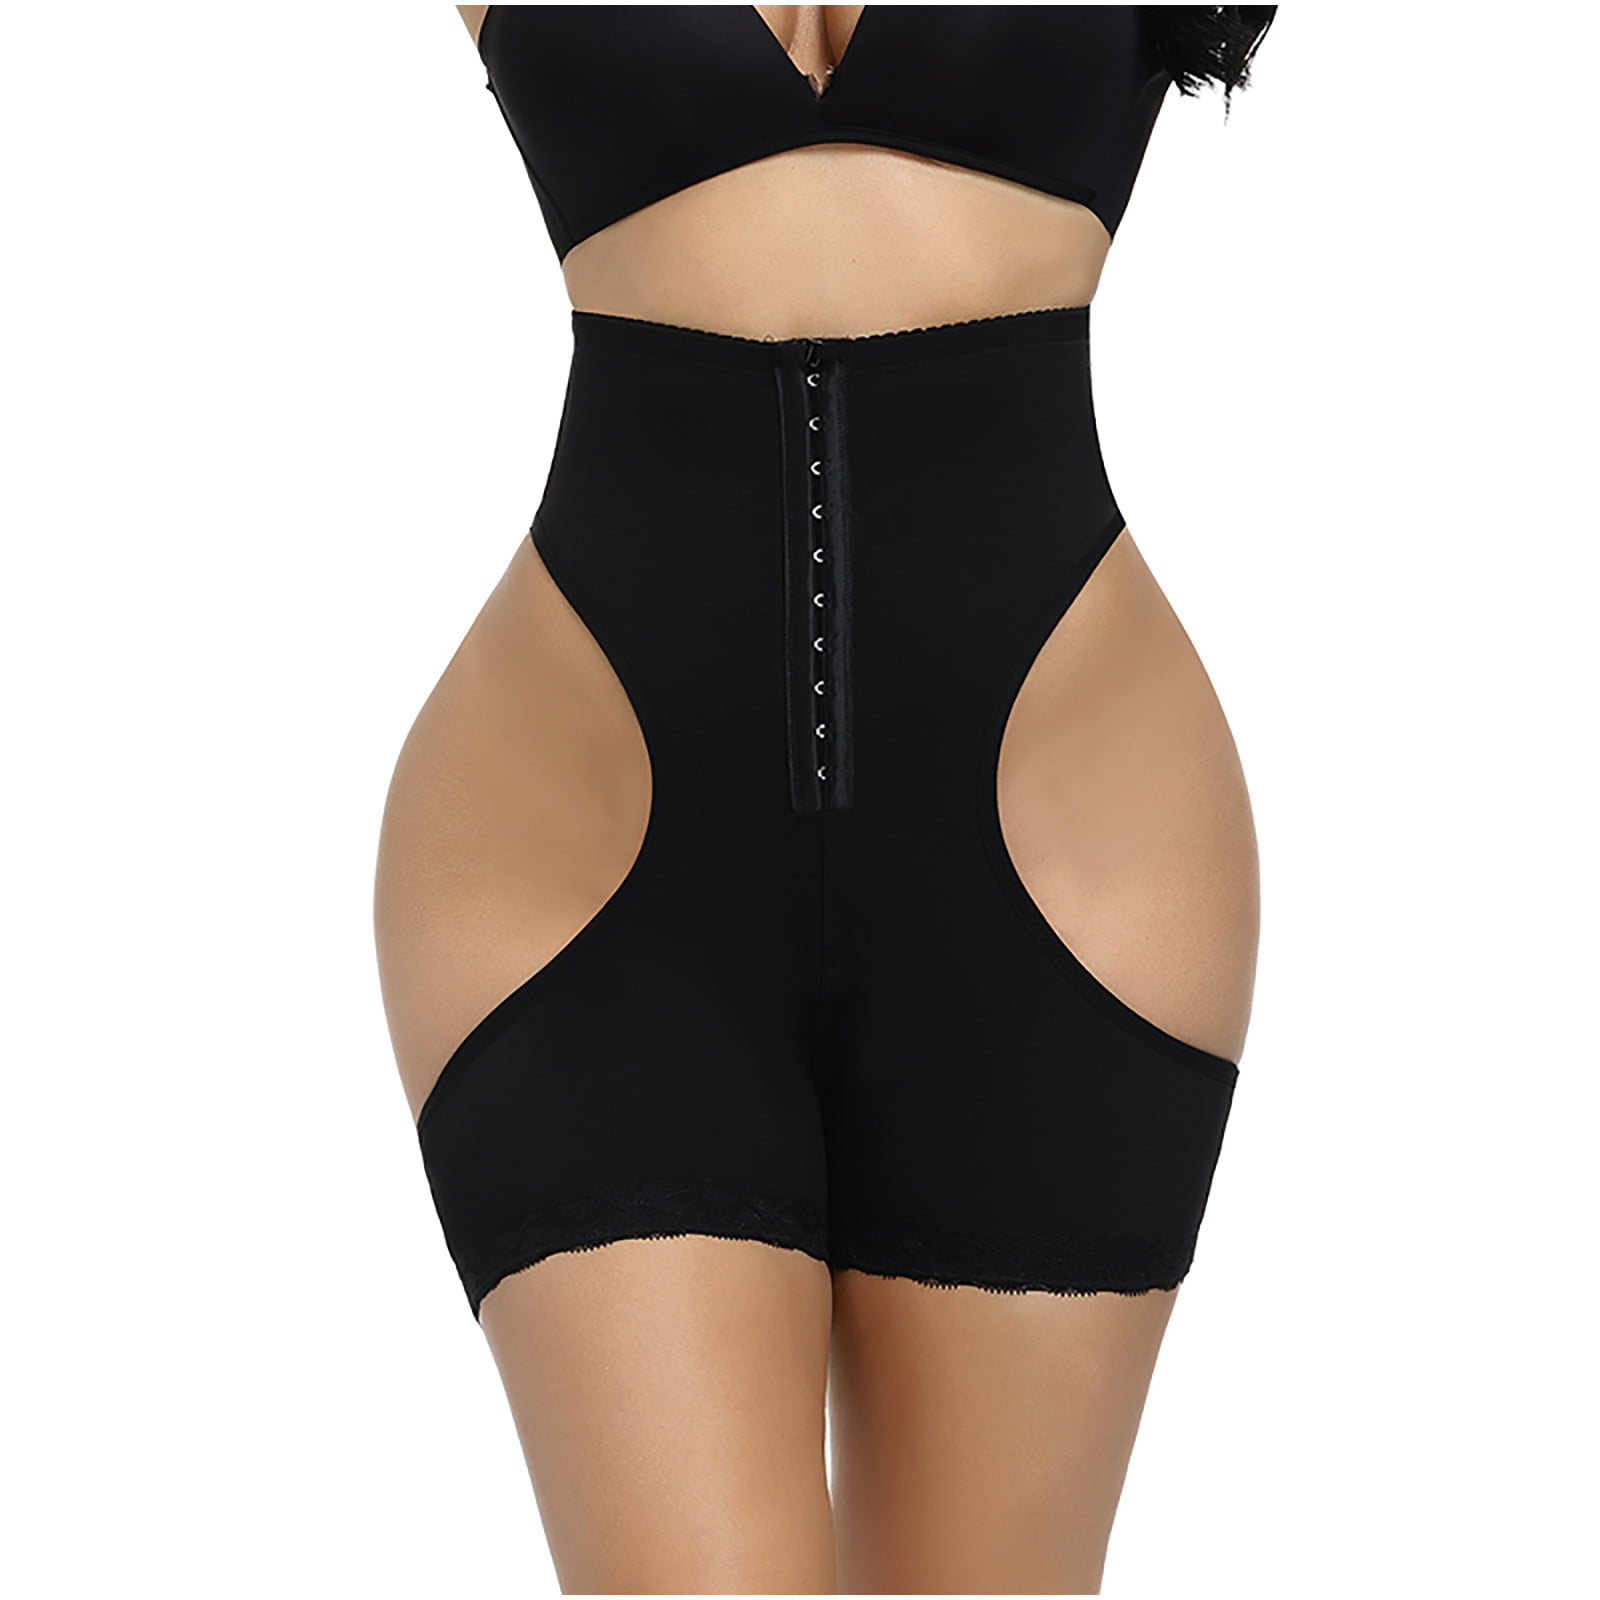 Lolmot Plus Size Shapewear Bodysuit for Women Tummy Control